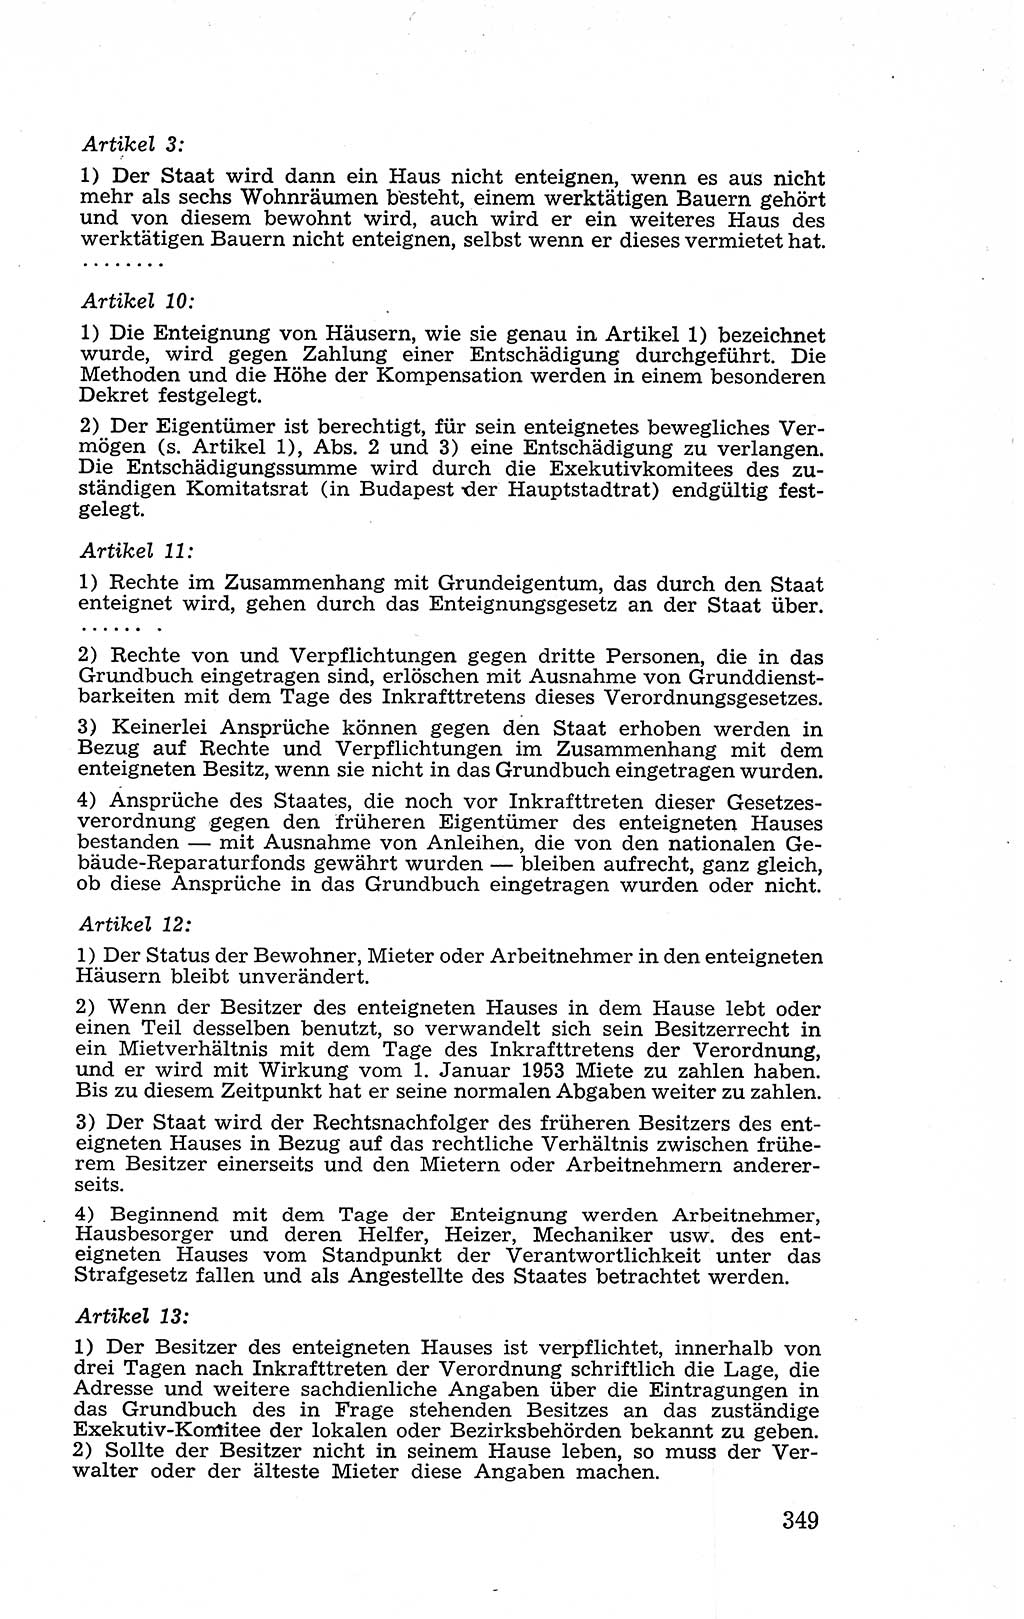 Recht in Fesseln, Dokumente, Internationale Juristen-Kommission [Bundesrepublik Deutschland (BRD)] 1955, Seite 349 (R. Dok. IJK BRD 1955, S. 349)